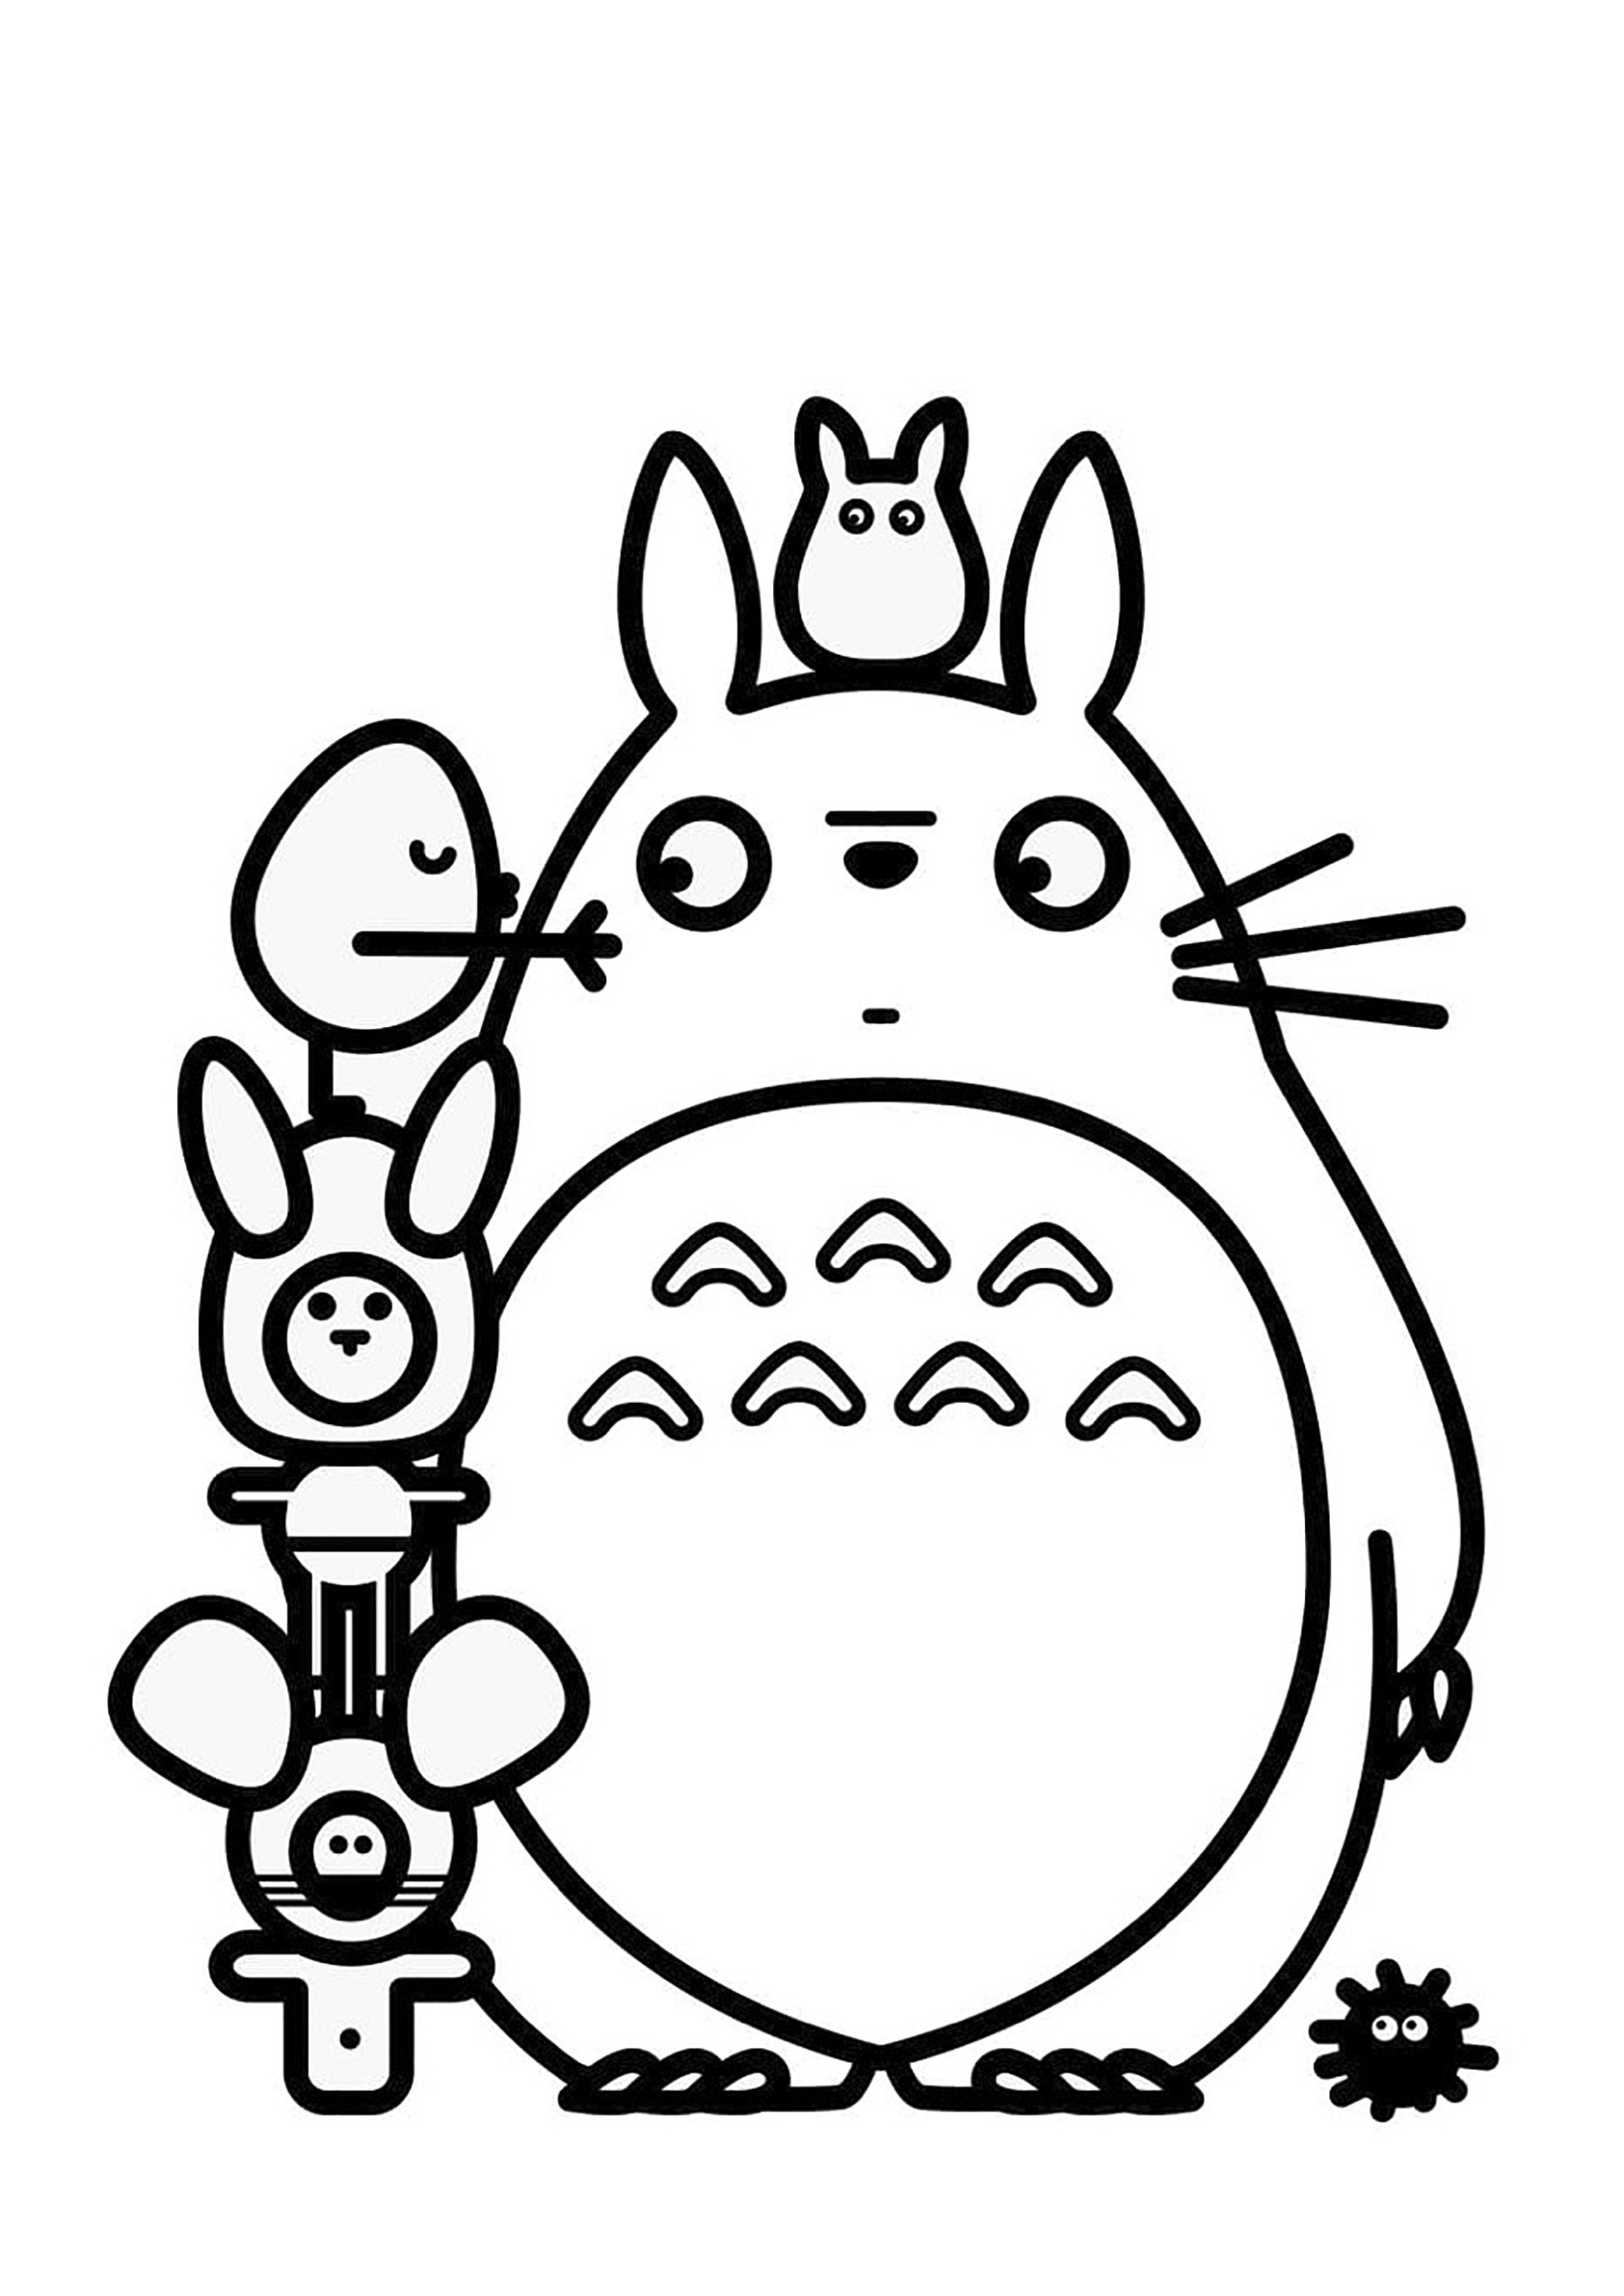 Páginas para colorir do Totoro com linhas grossas. Totoro é uma personagem fictícia criada em 1988 por Hayao Miyazaki do Studio Ghibli para o filme O Meu Vizinho Totoro.